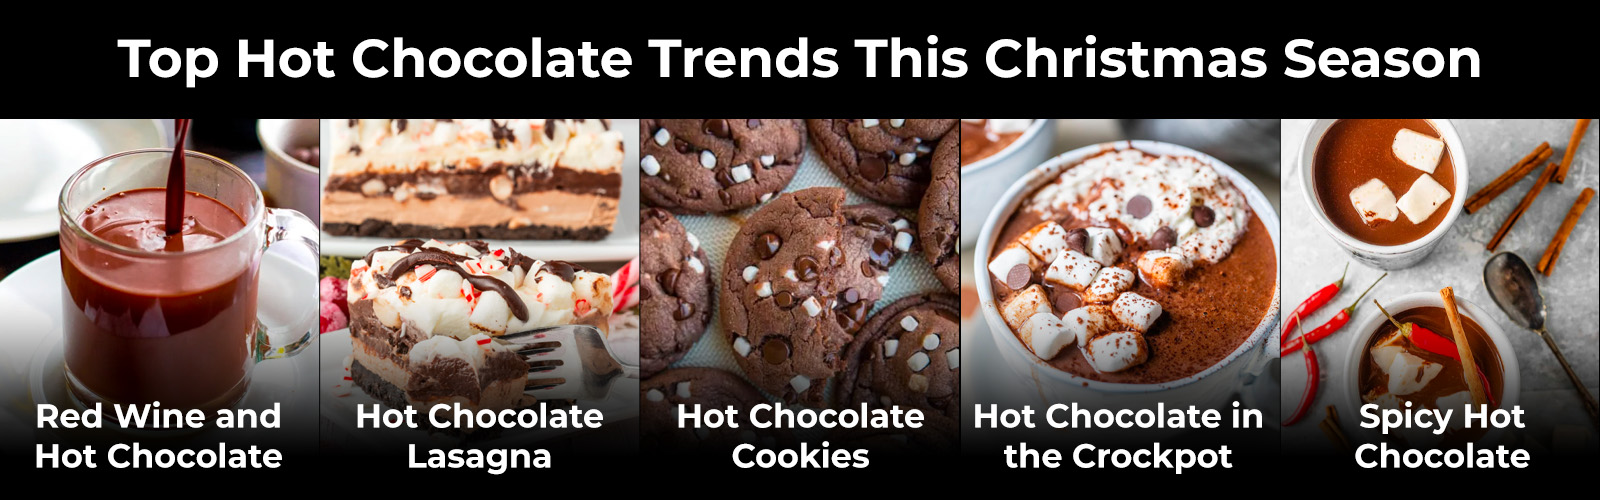 Principales tendencias del chocolate caliente esta temporada